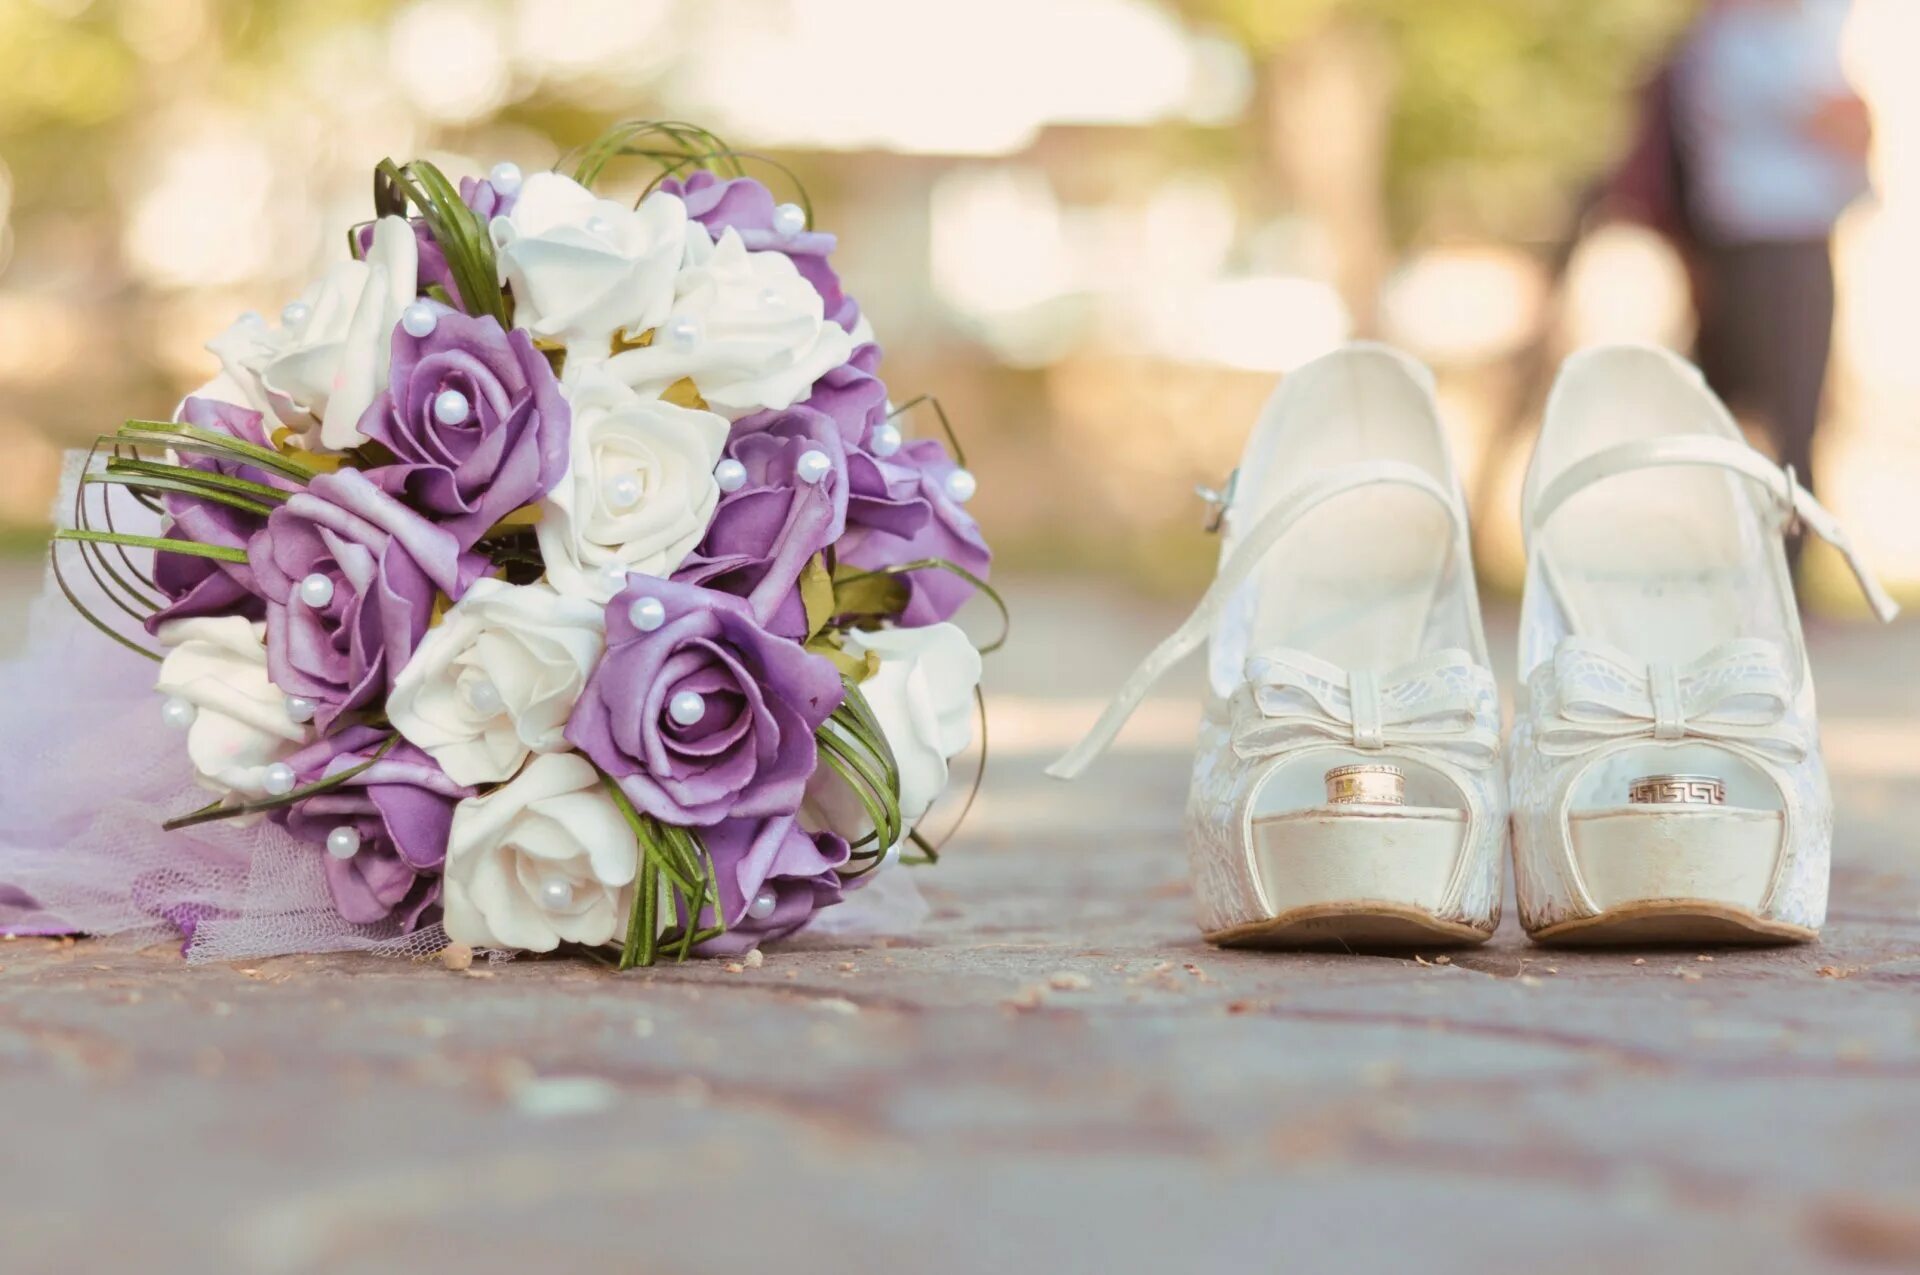 Цветы на свадьбу. Свадебный букет и кольца. Букет невесты на свадьбу. Букет невесты, Свадебные кольца, туфельки.